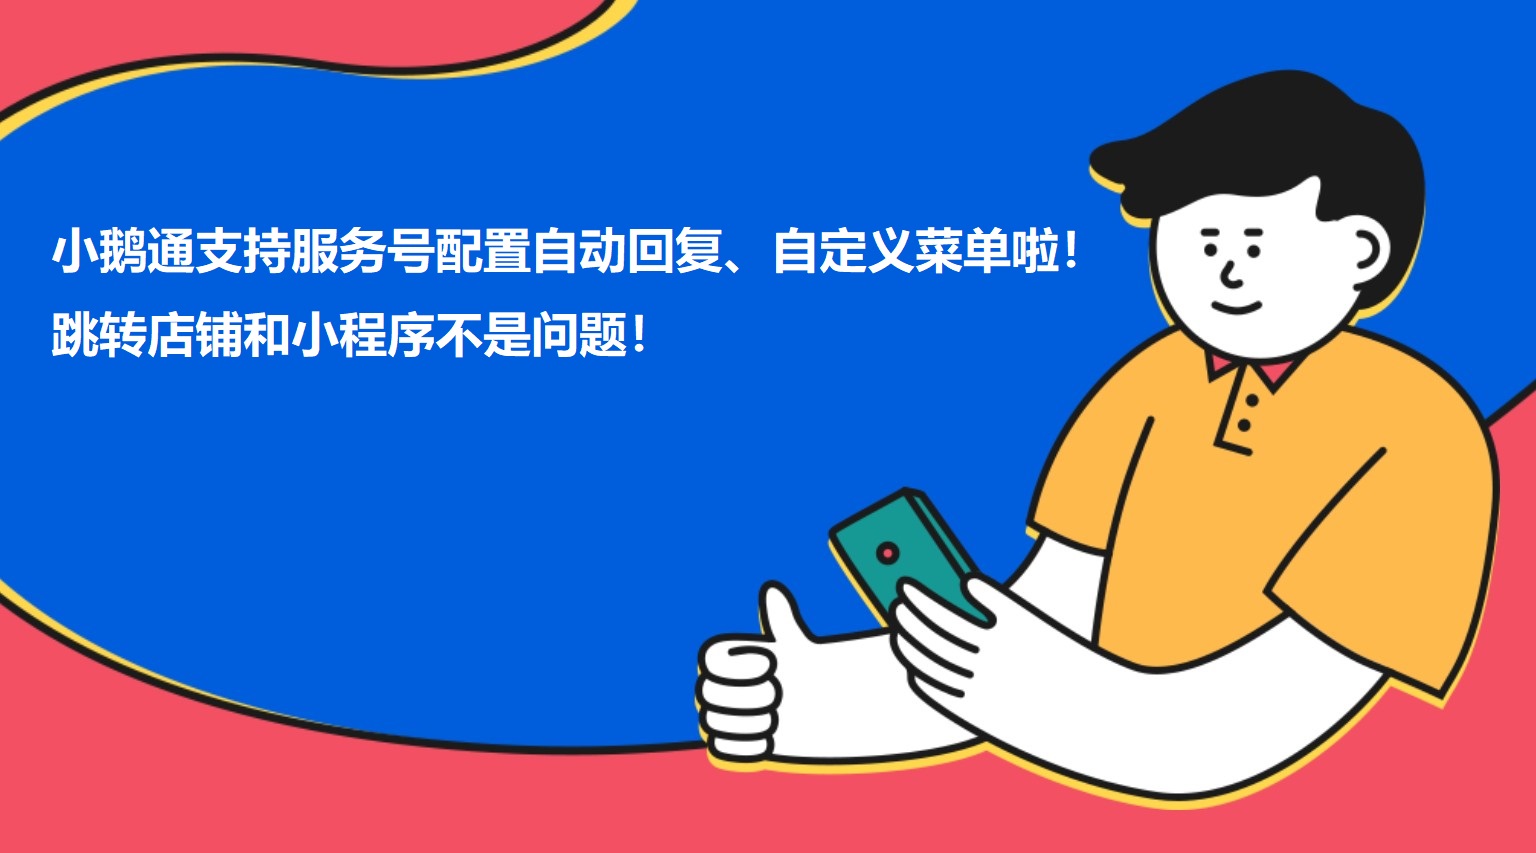 广西小鹅通支持服务号配置自动回复、自定义菜单啦！跳转店铺和小程序不是问题！